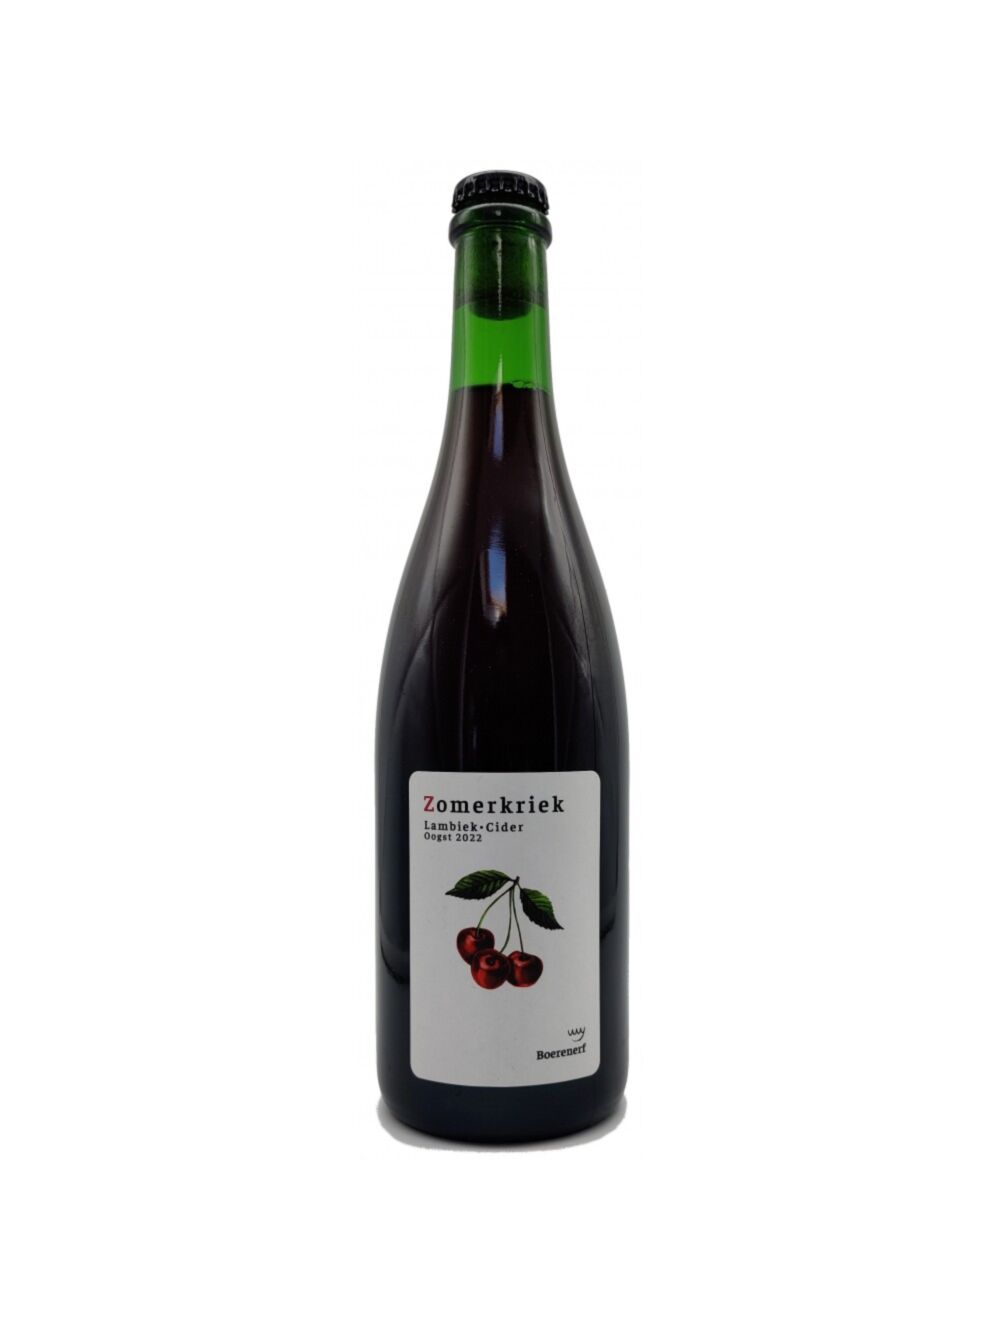 Zomerkriek Oogst 2022 - Het Boerenerf - Lambic Cider Blend with Cherries, 7%, 750ml Sharing Beer Bottle